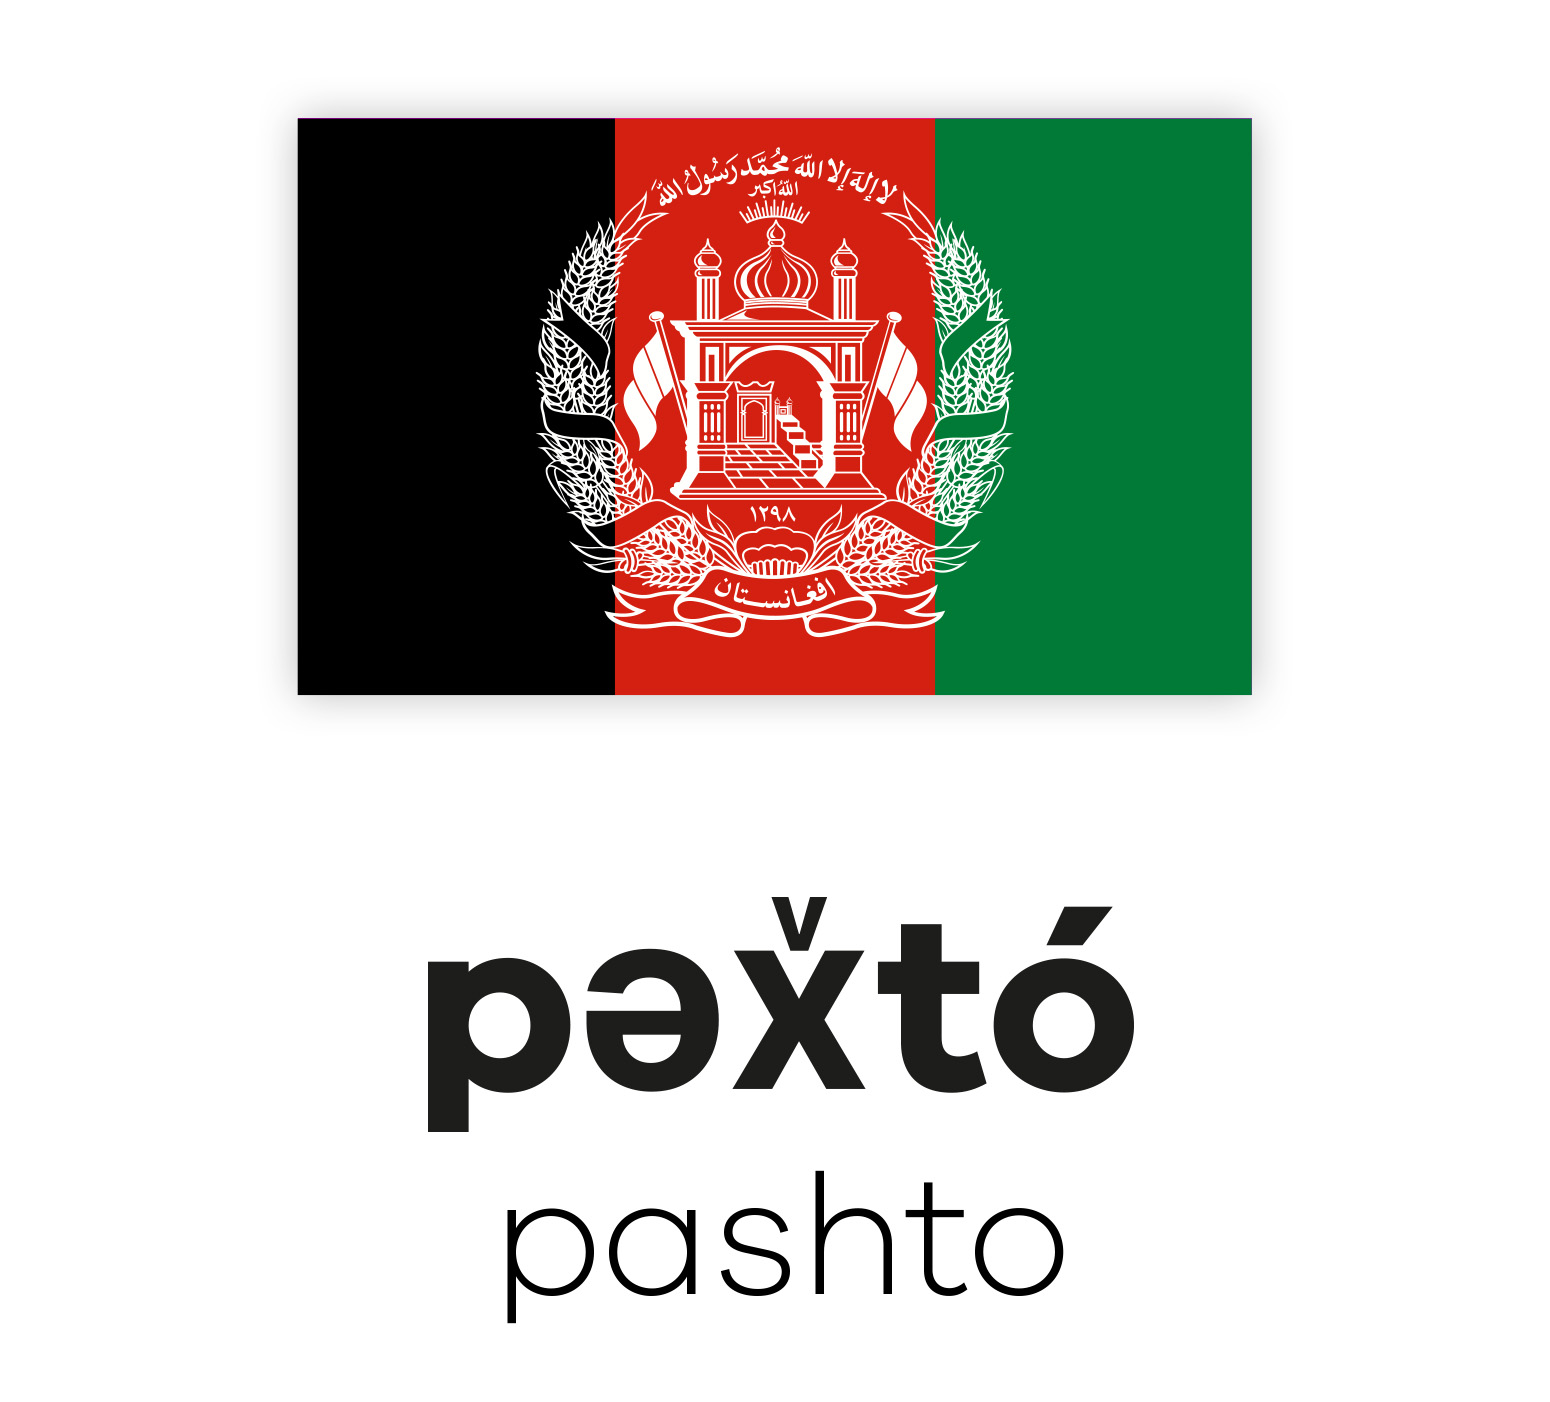 Afghanistan Flagge mit Beschriftung "Pashto" in lateinischen und paschtunischen Schriften, Darstellung der paschtunischen Sprache.